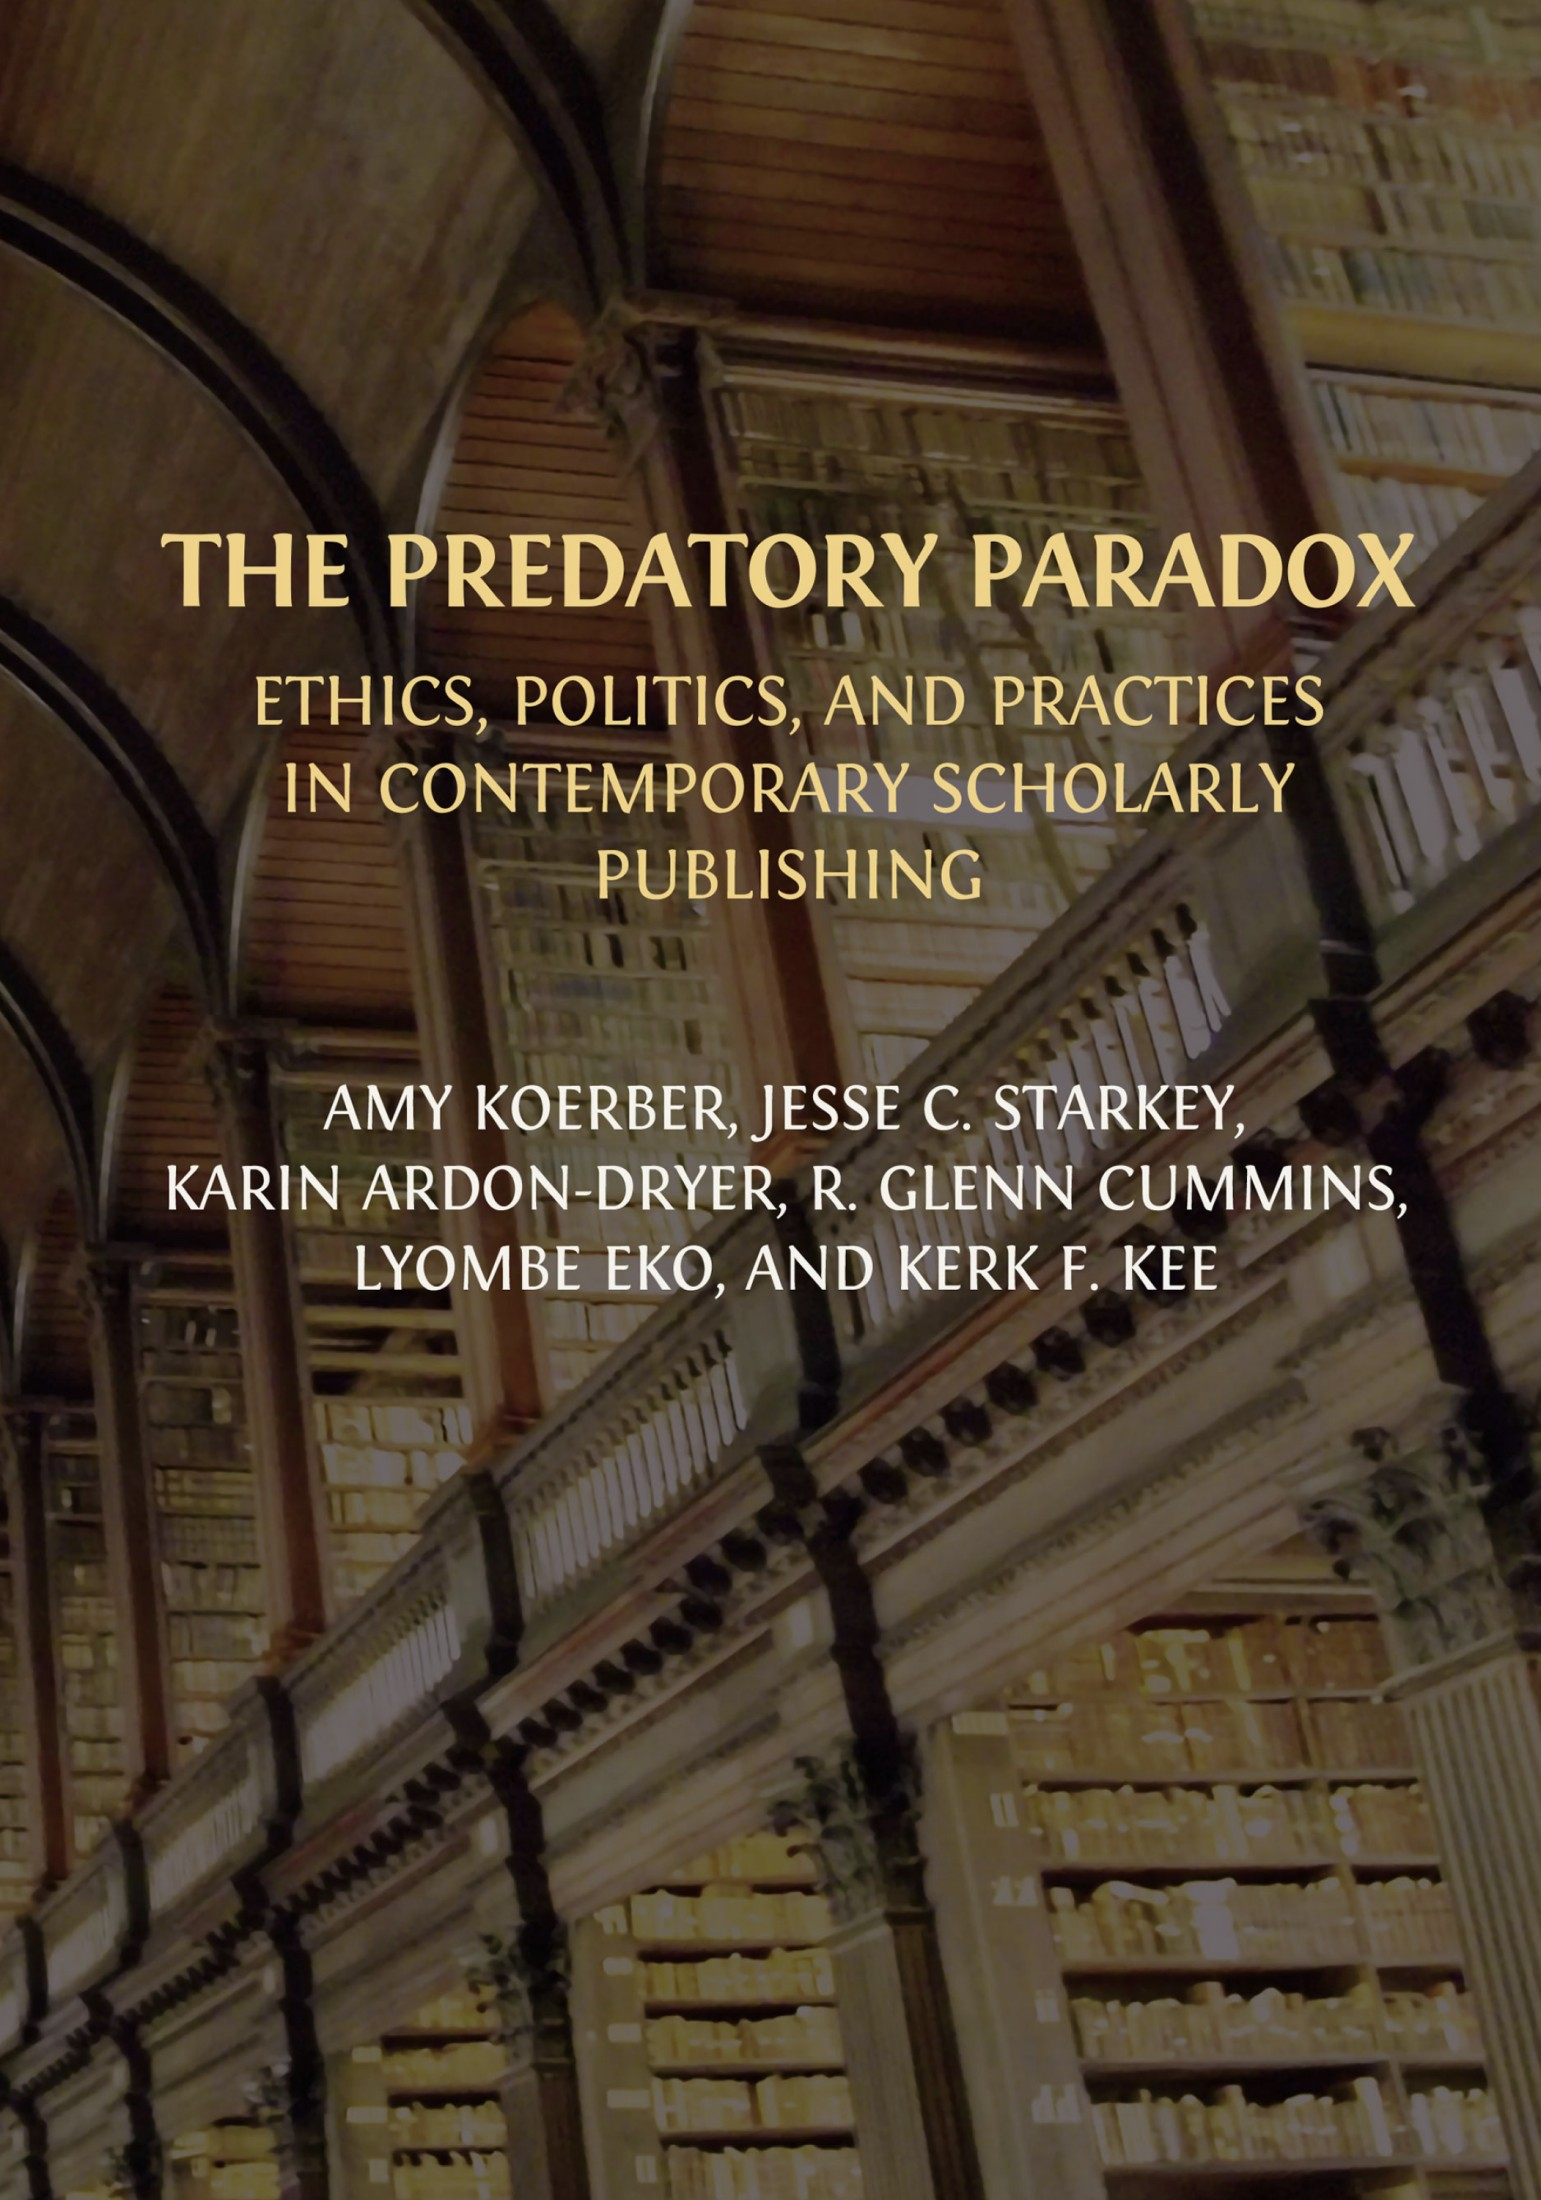 The Predatory Paradox book cover image